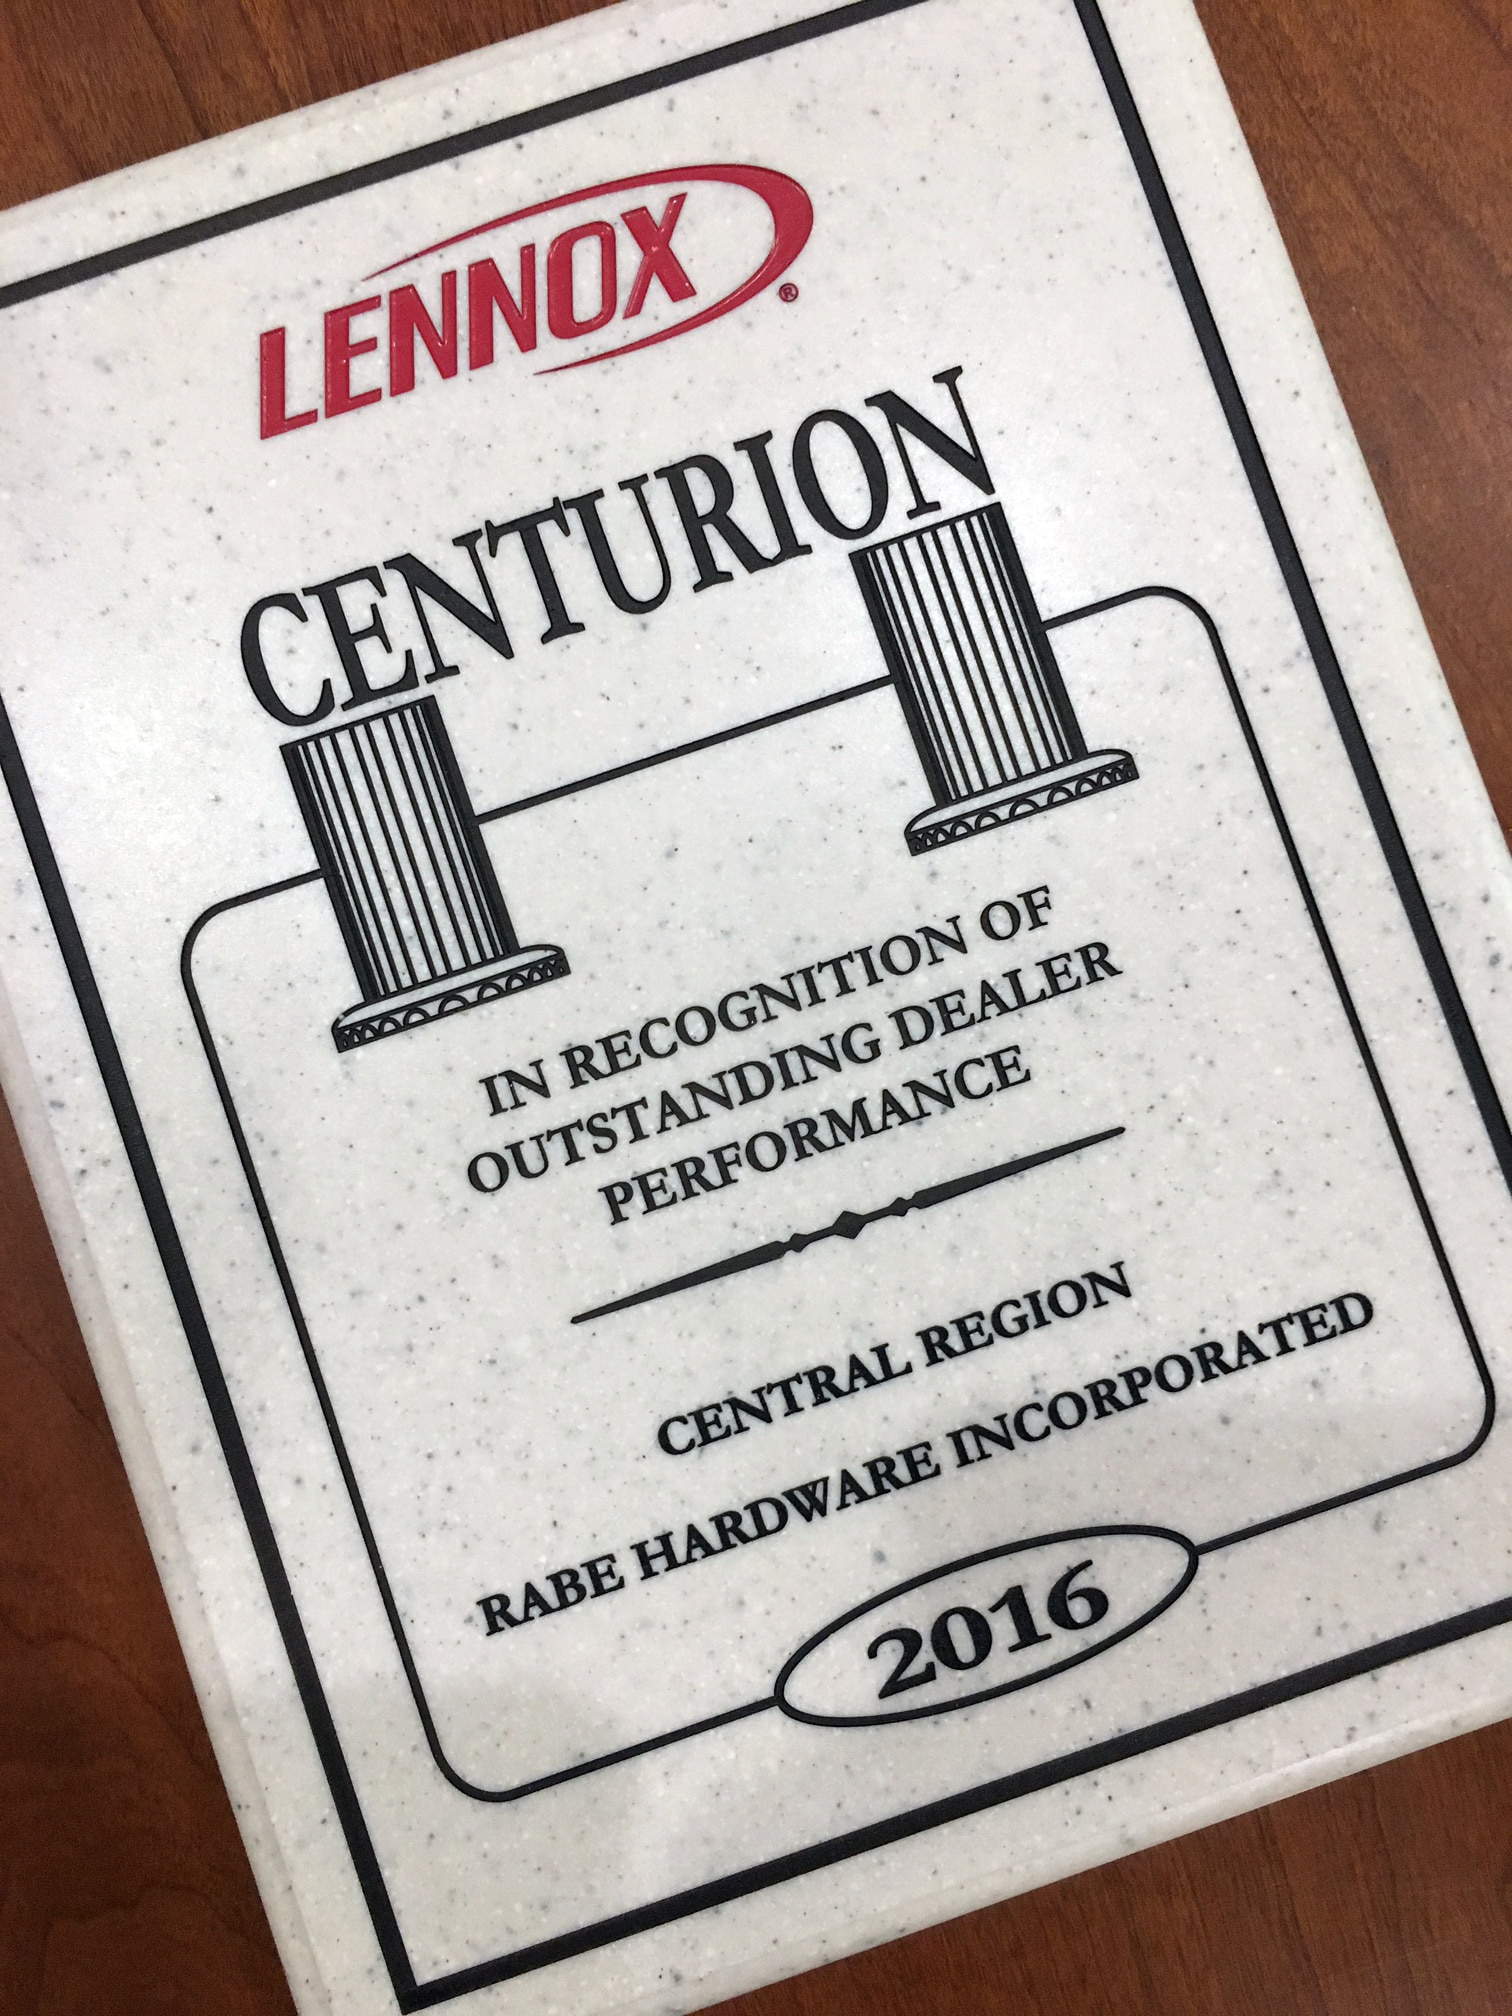 Lennox Centurion Award